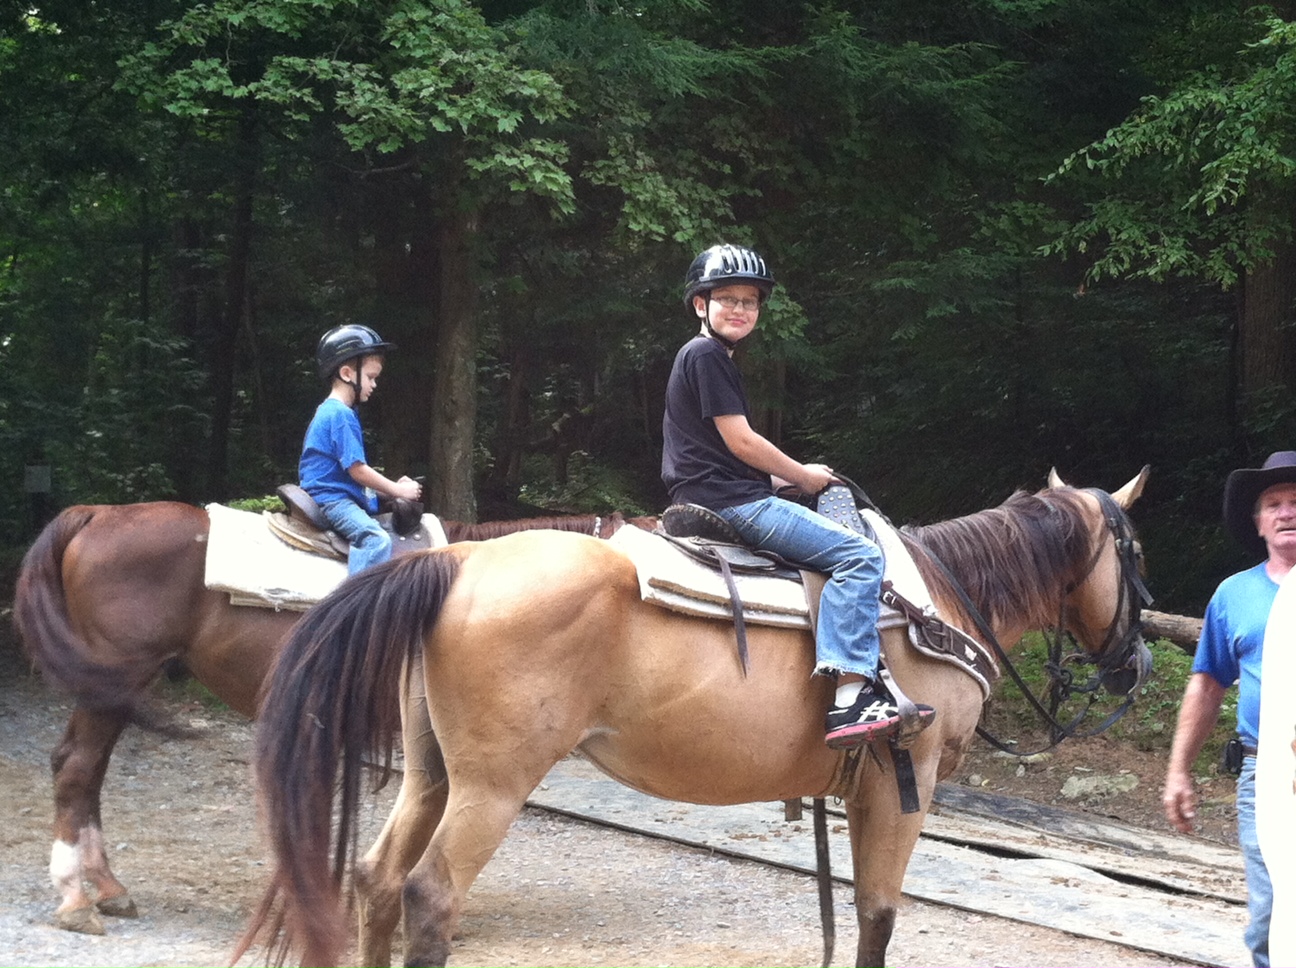 two boys on horseback smiling